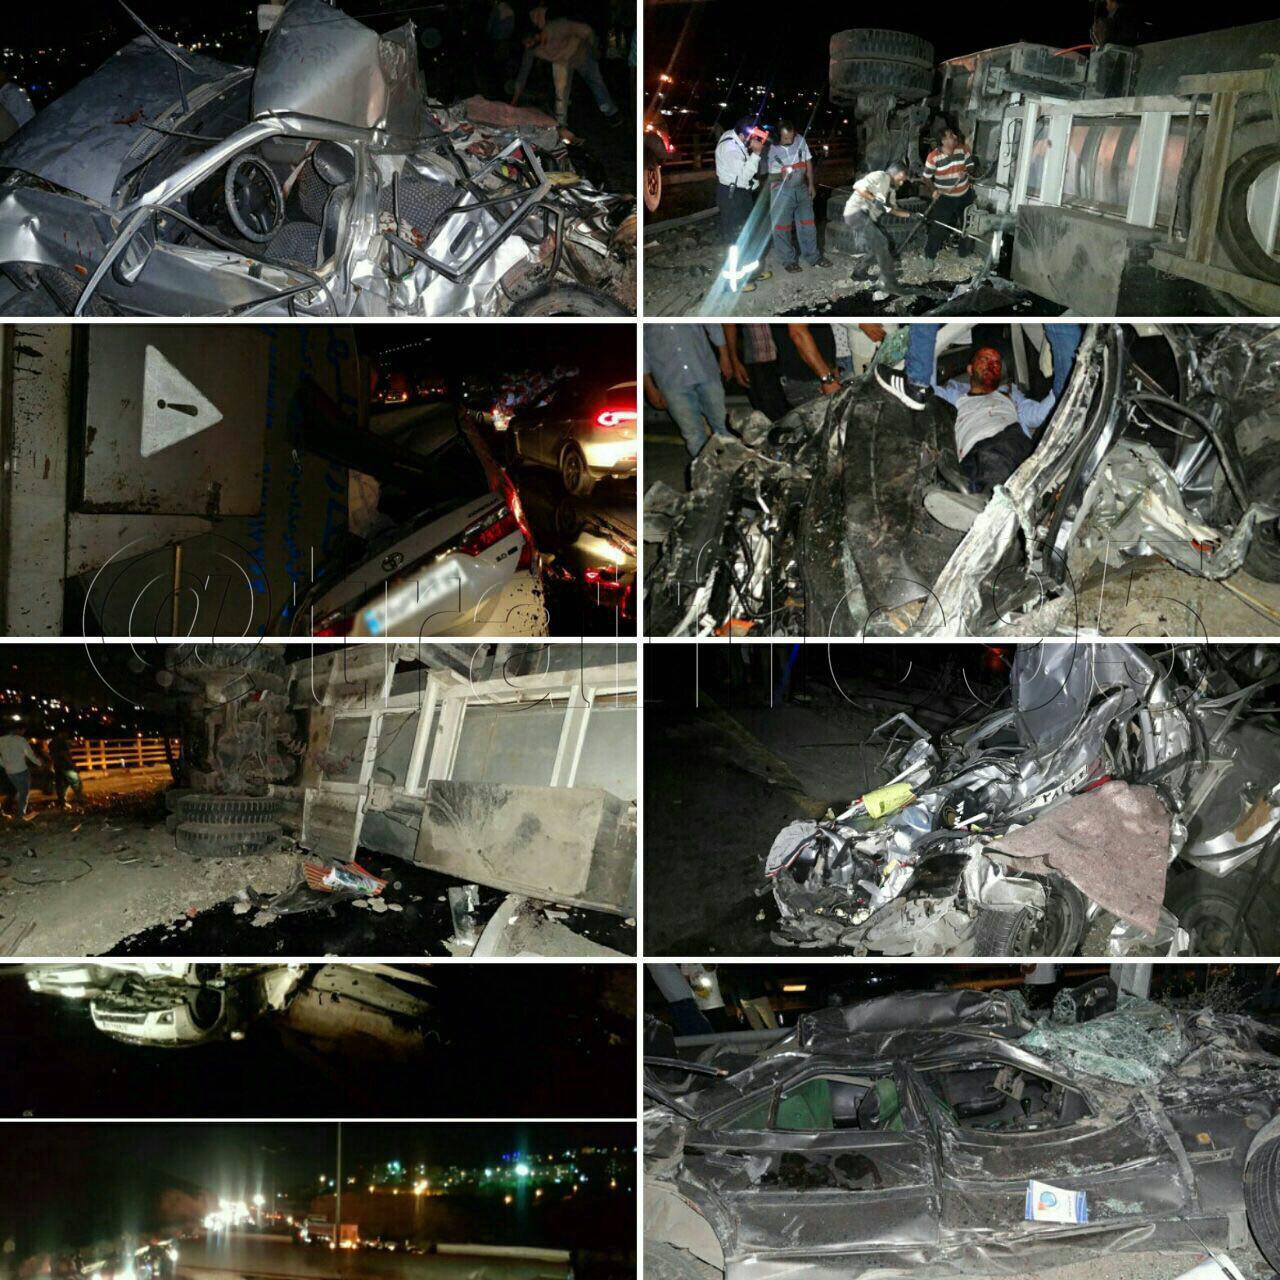 واژگونی تریلر حاوی قیر در محور تهران به دماوند/ترافیک سنگین +تصاویر